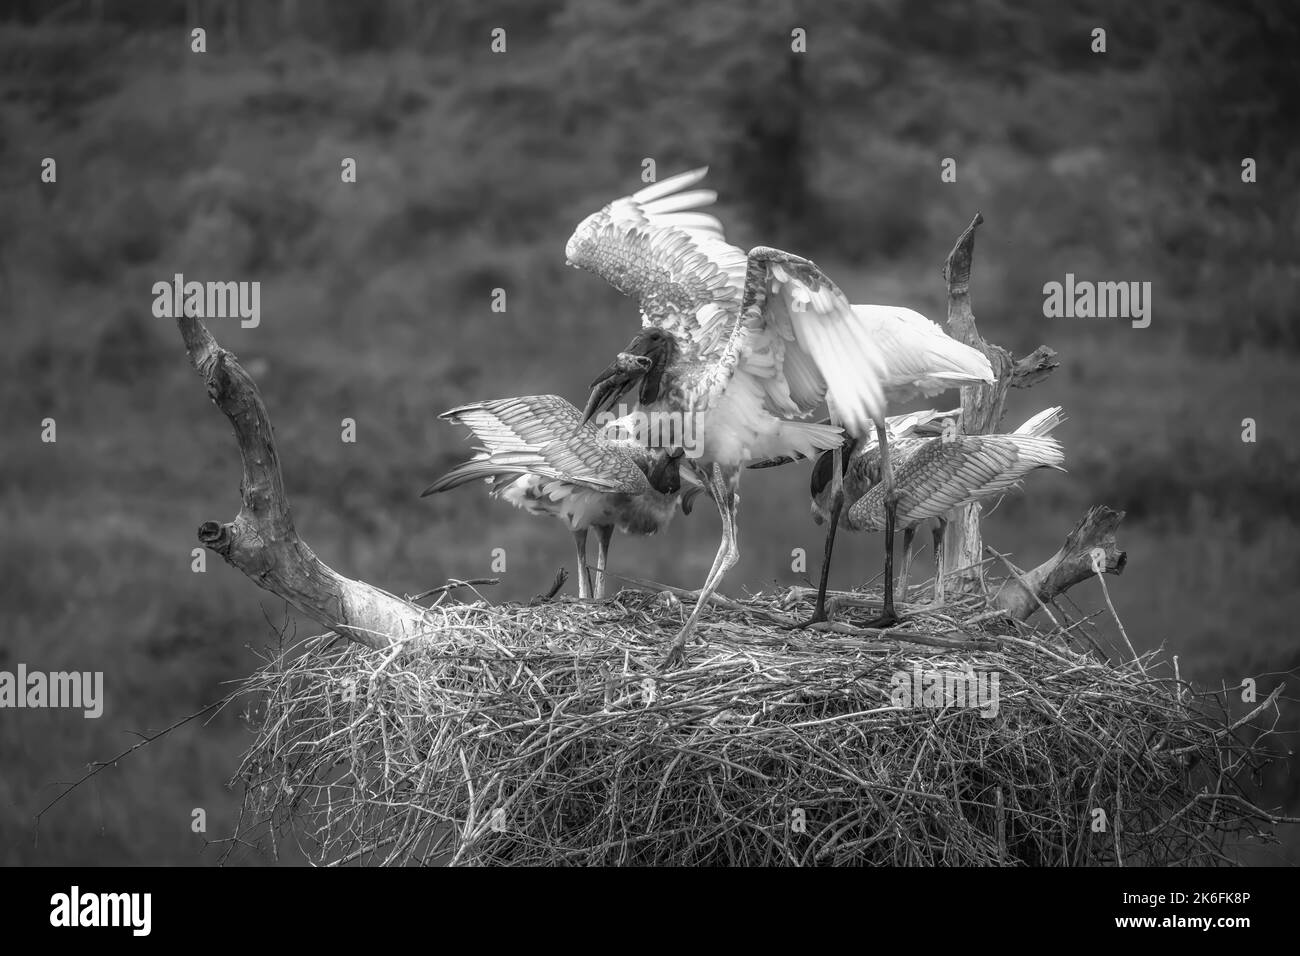 Immagine in bianco e nero di Jabiru cicogne su un nido - adulto e giovane - alimentazione Foto Stock